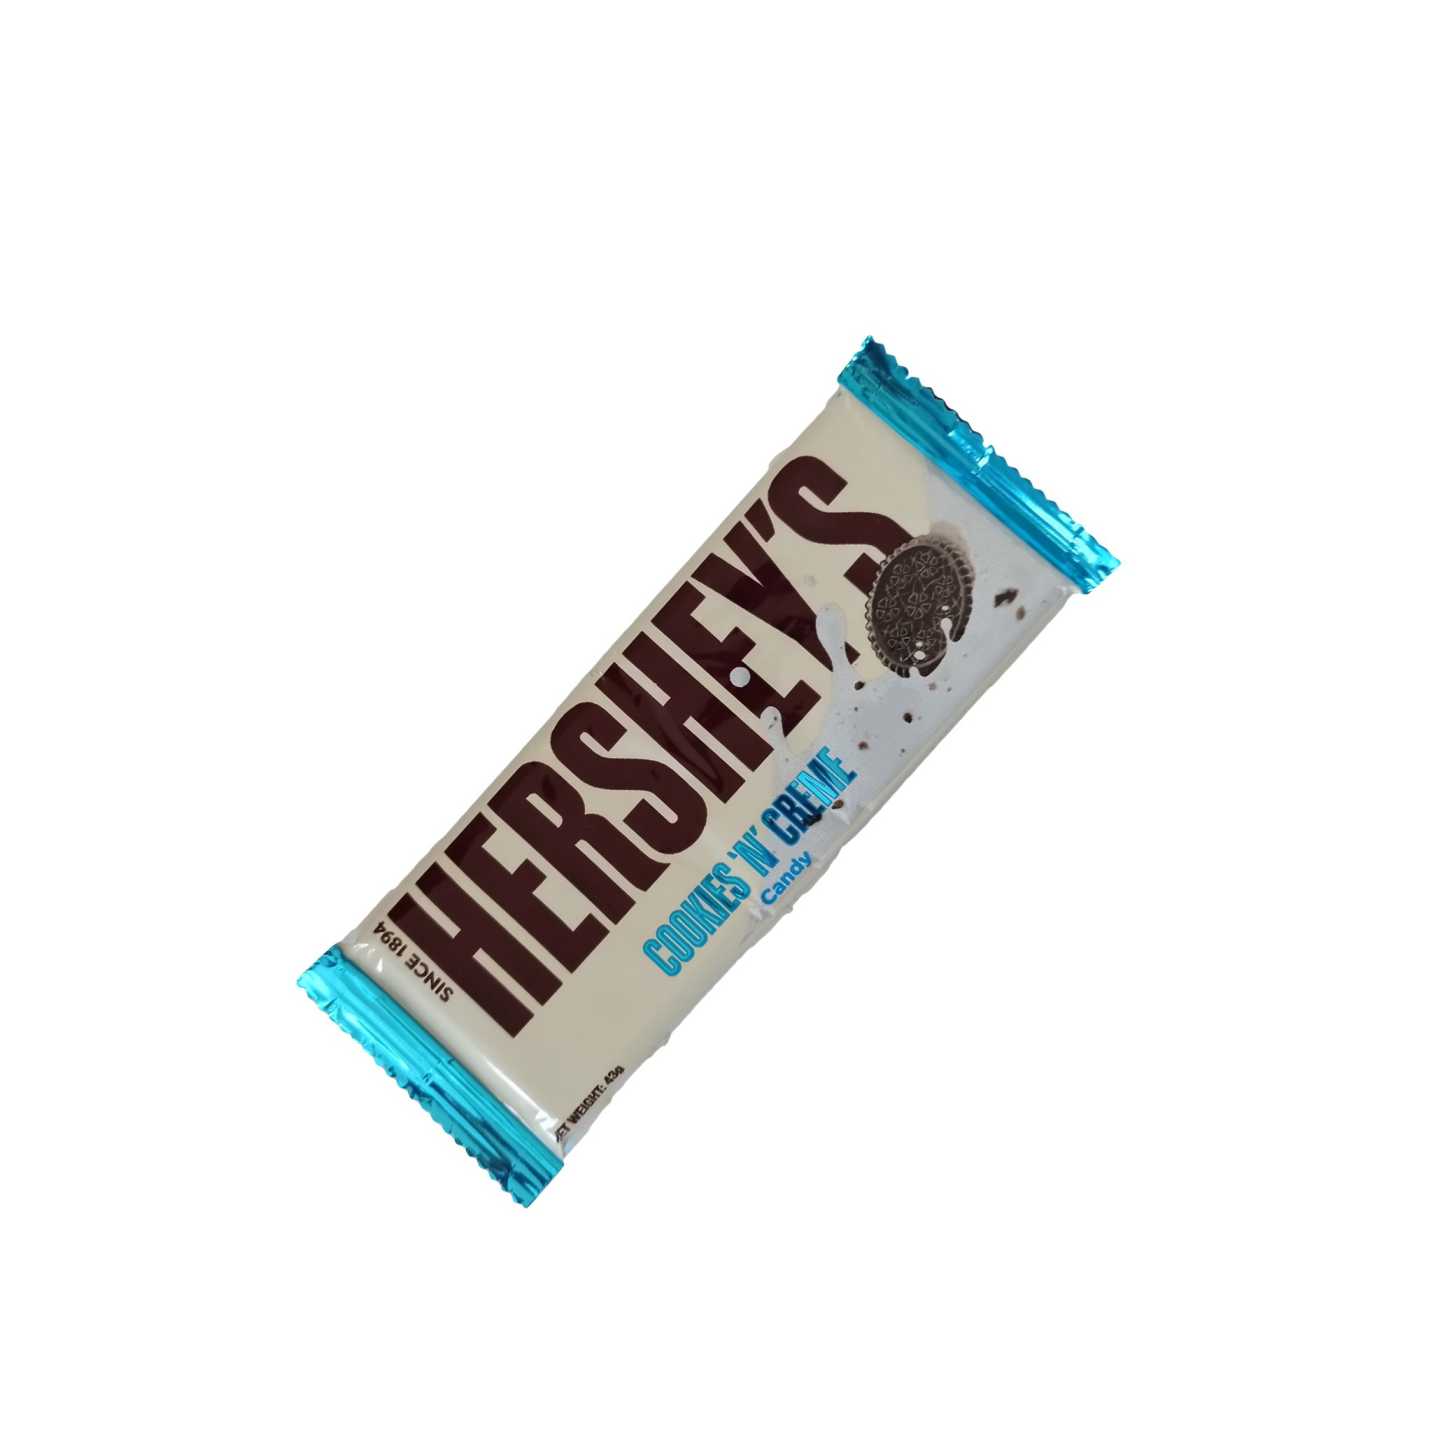 Hersheys Cookie N' Creame - הרשי קרם עוגיות - טעימים